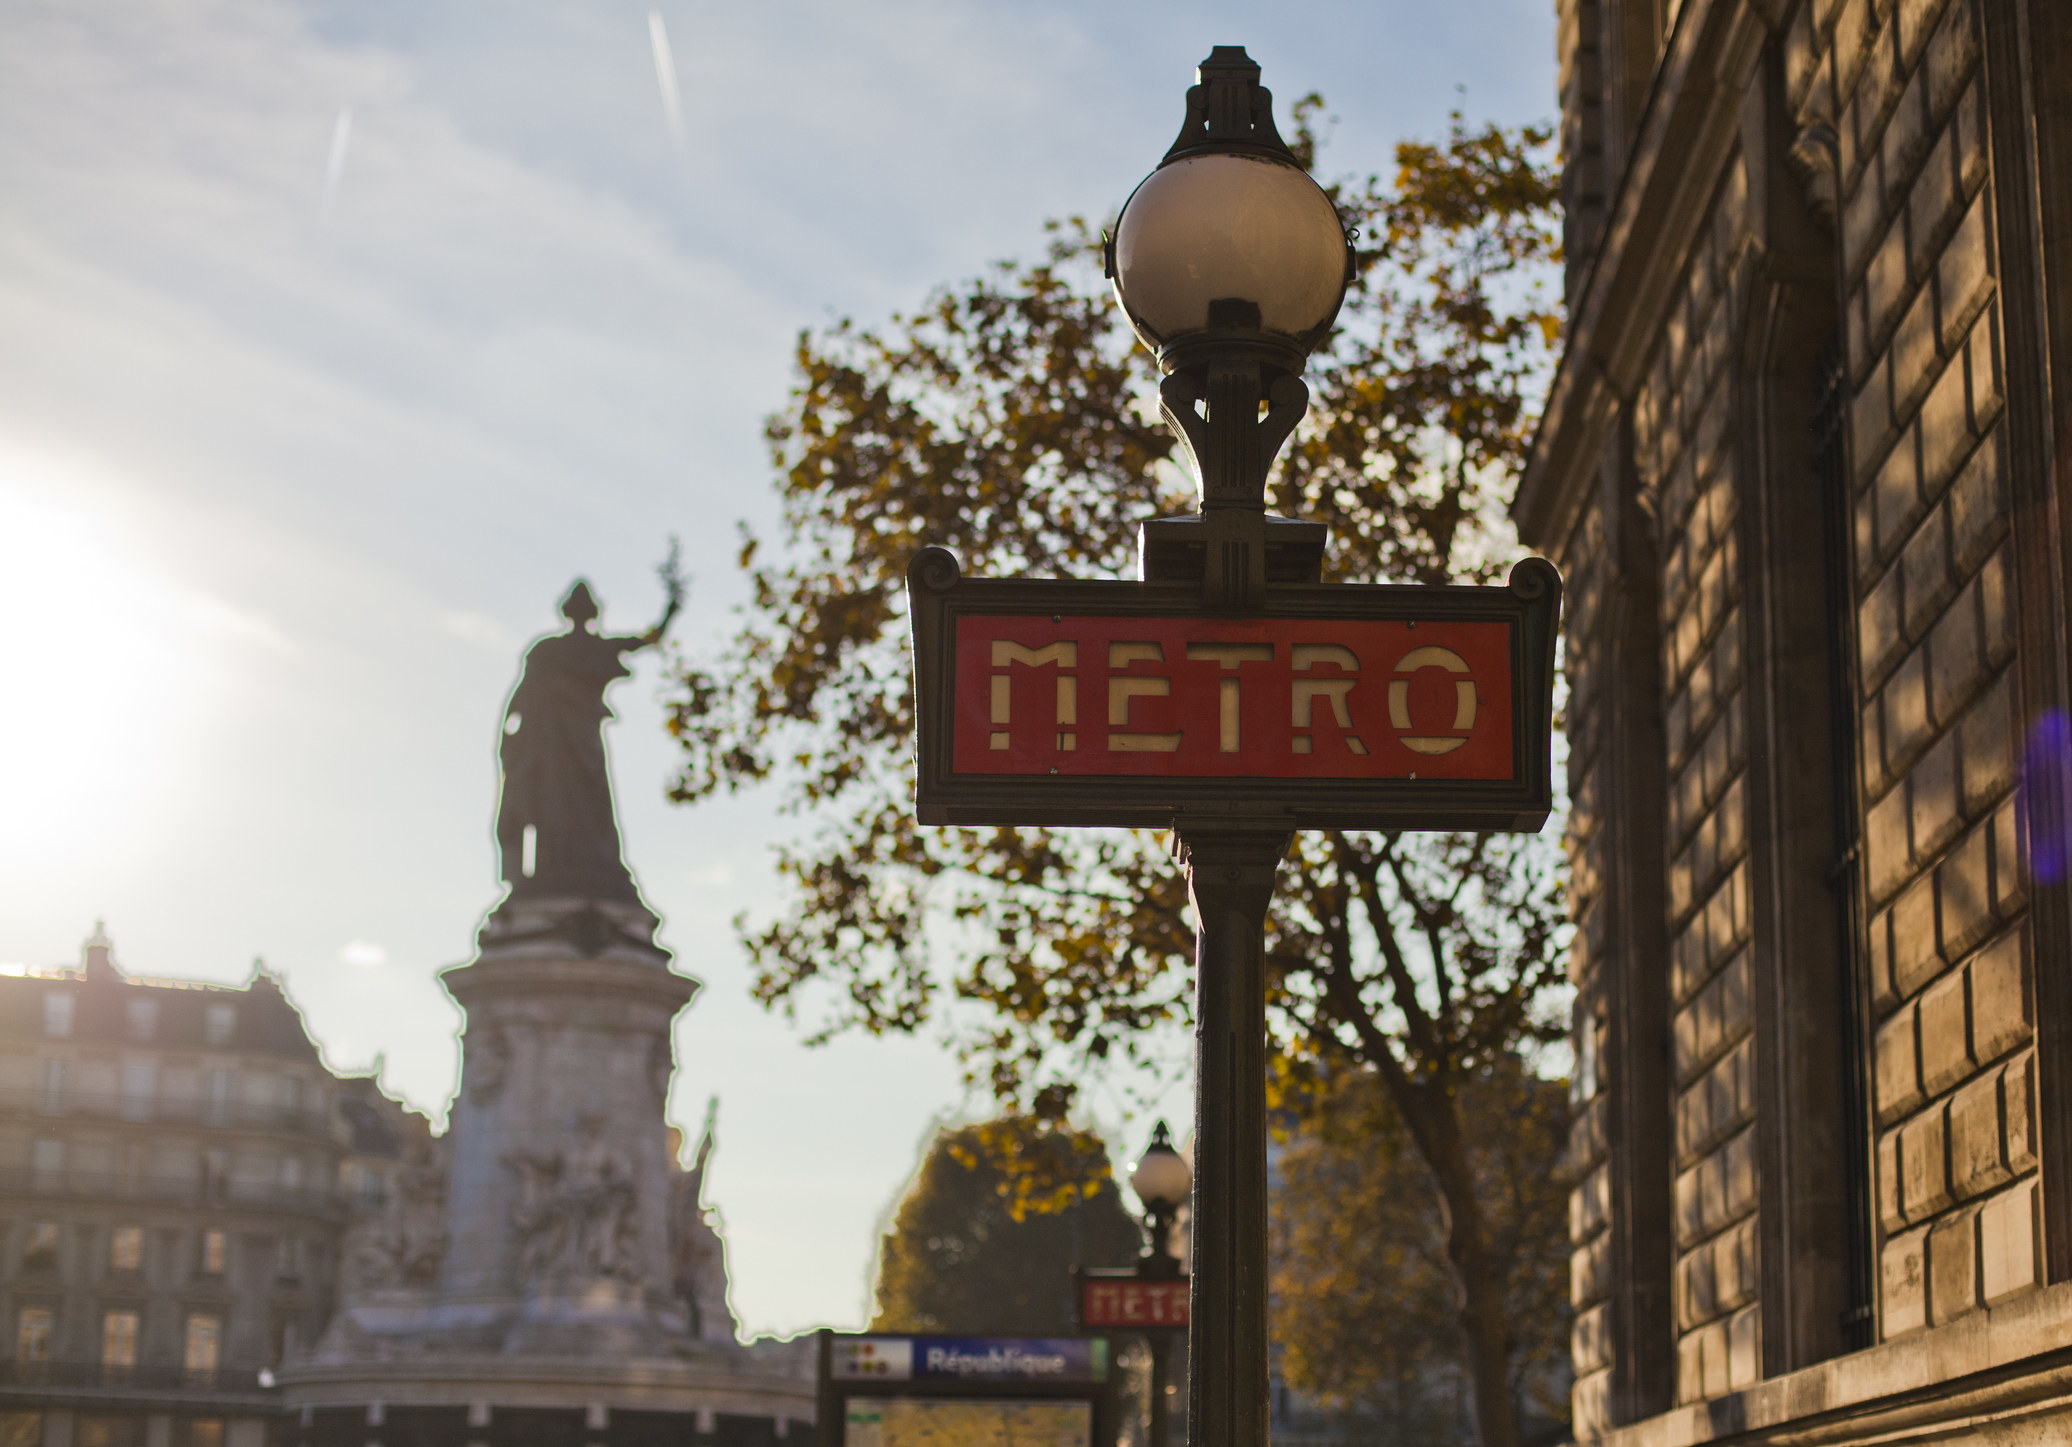 A metro sign in Paris.